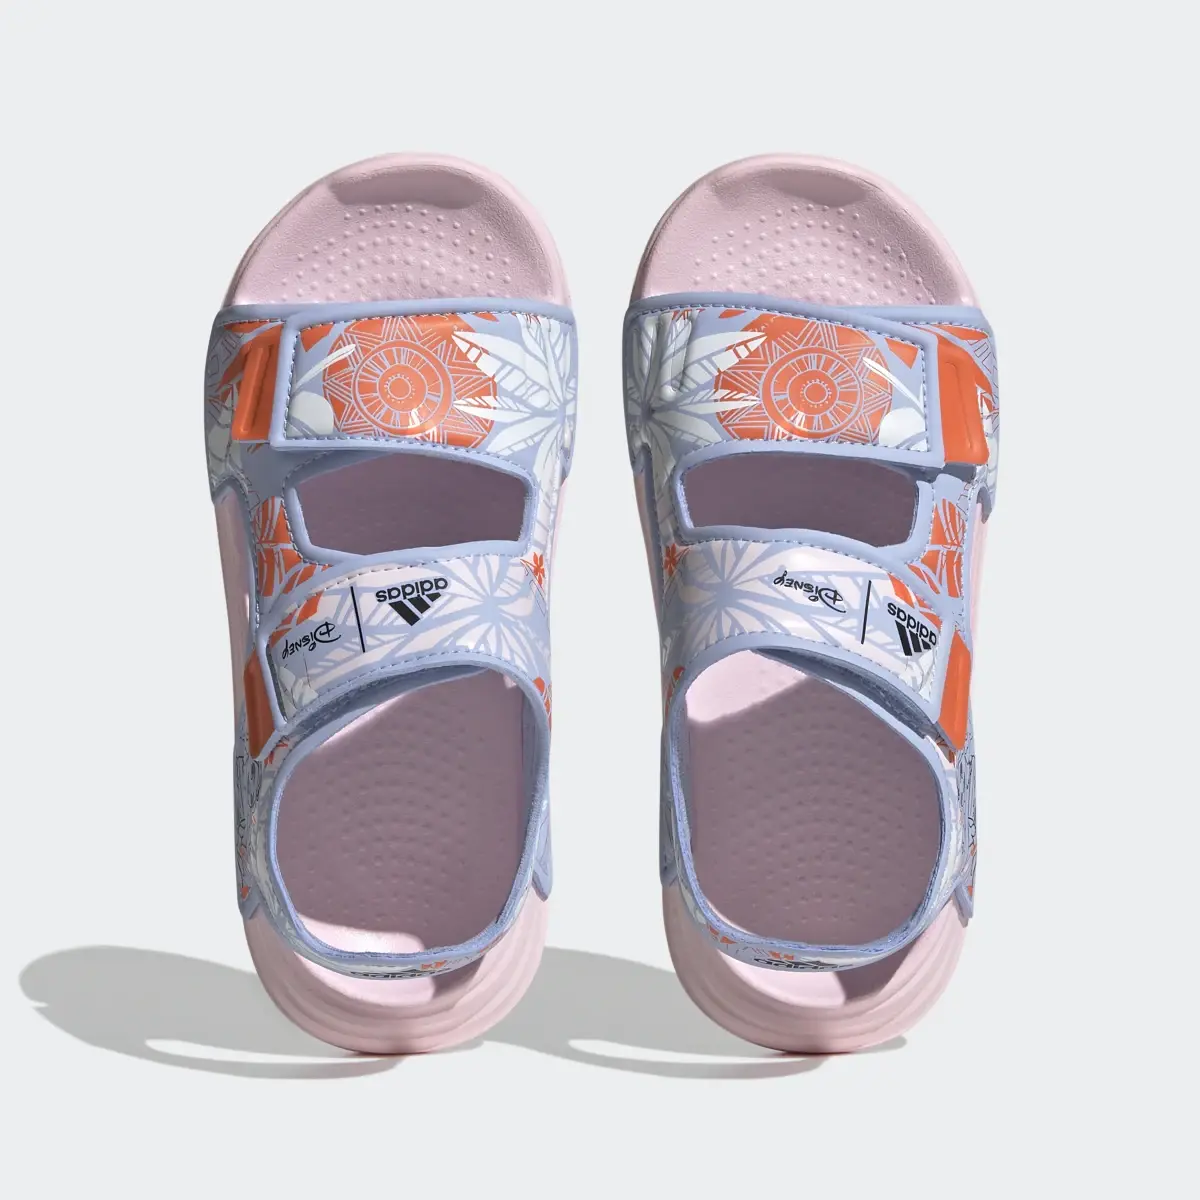 Adidas x Disney AltaSwim Moana Swim Sandals. 3